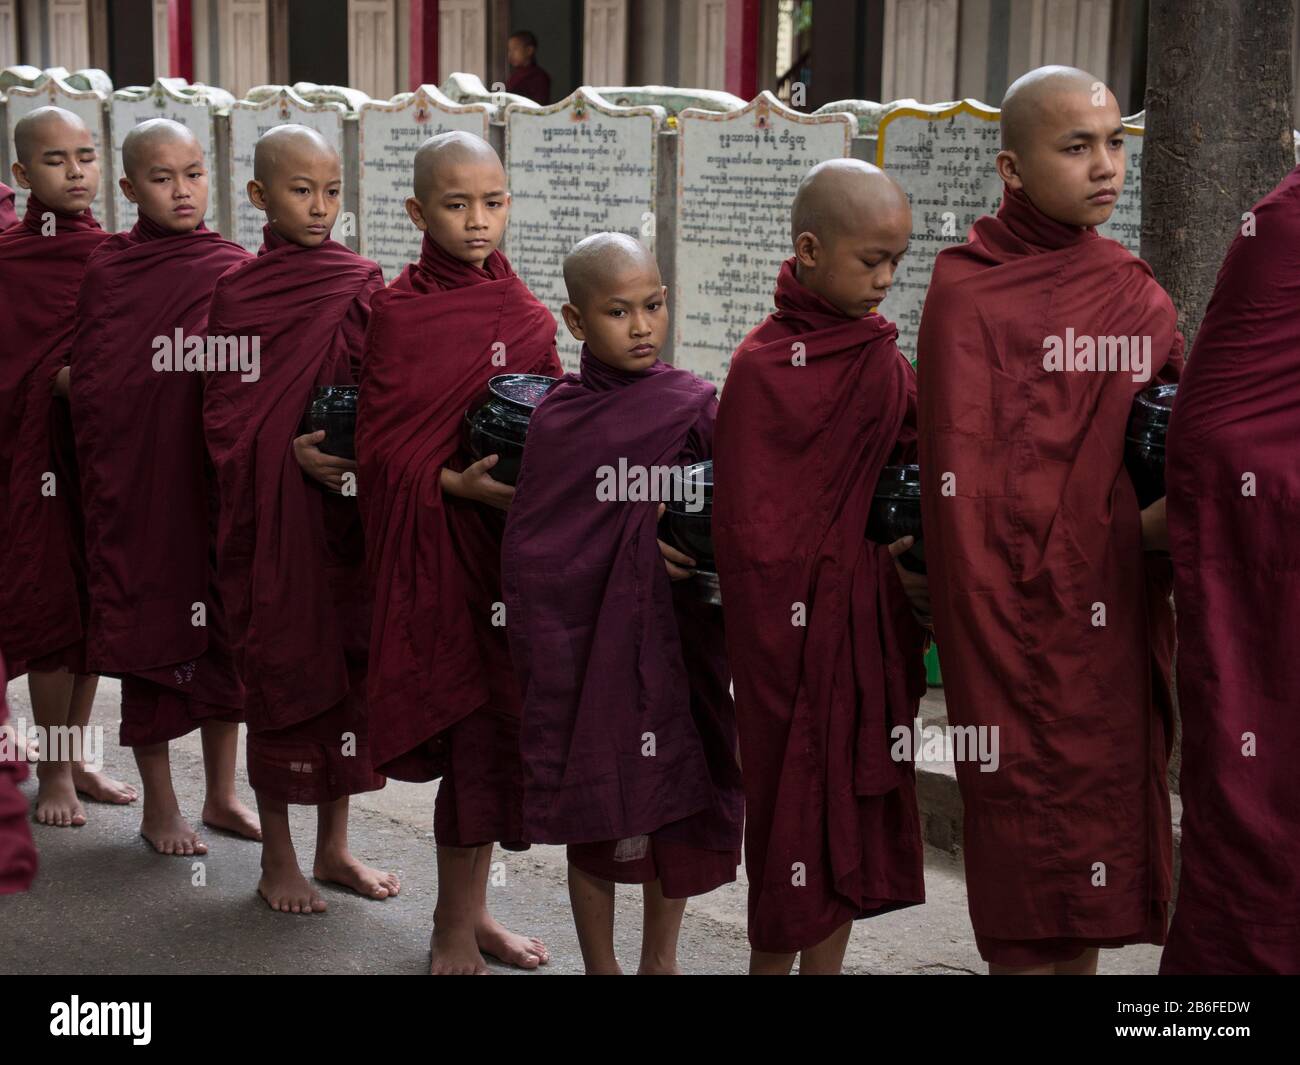 Des moines se sont alignés pour entrer dans la salle à manger pour le premier repas de la journée au monastère de Mahagandayon, Amarapura, région de Mandalay, Myanmar Banque D'Images